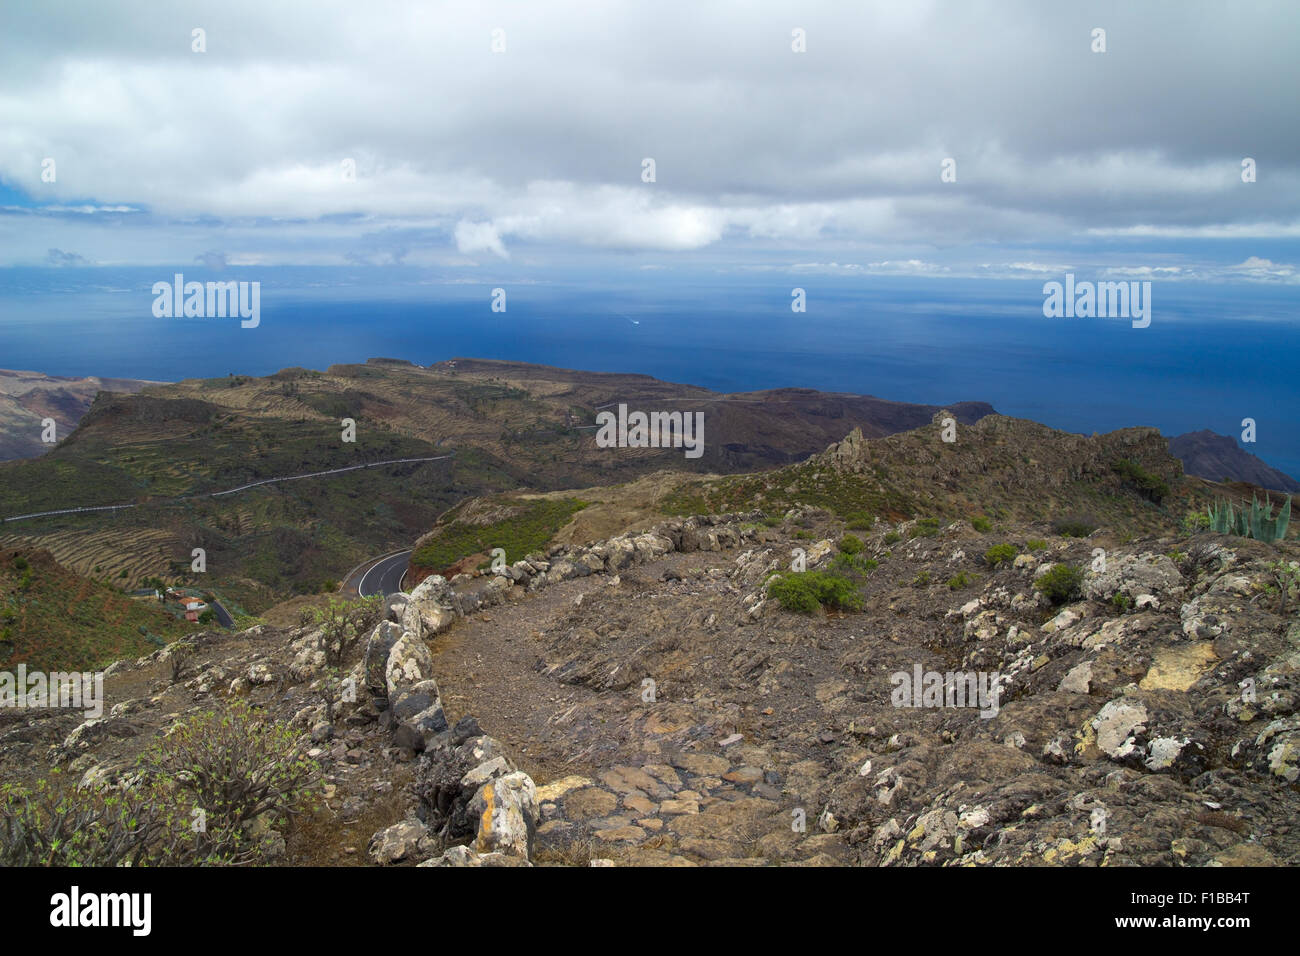 La Gomera, Canary islands, view towards south coast, stony footpath Stock Photo